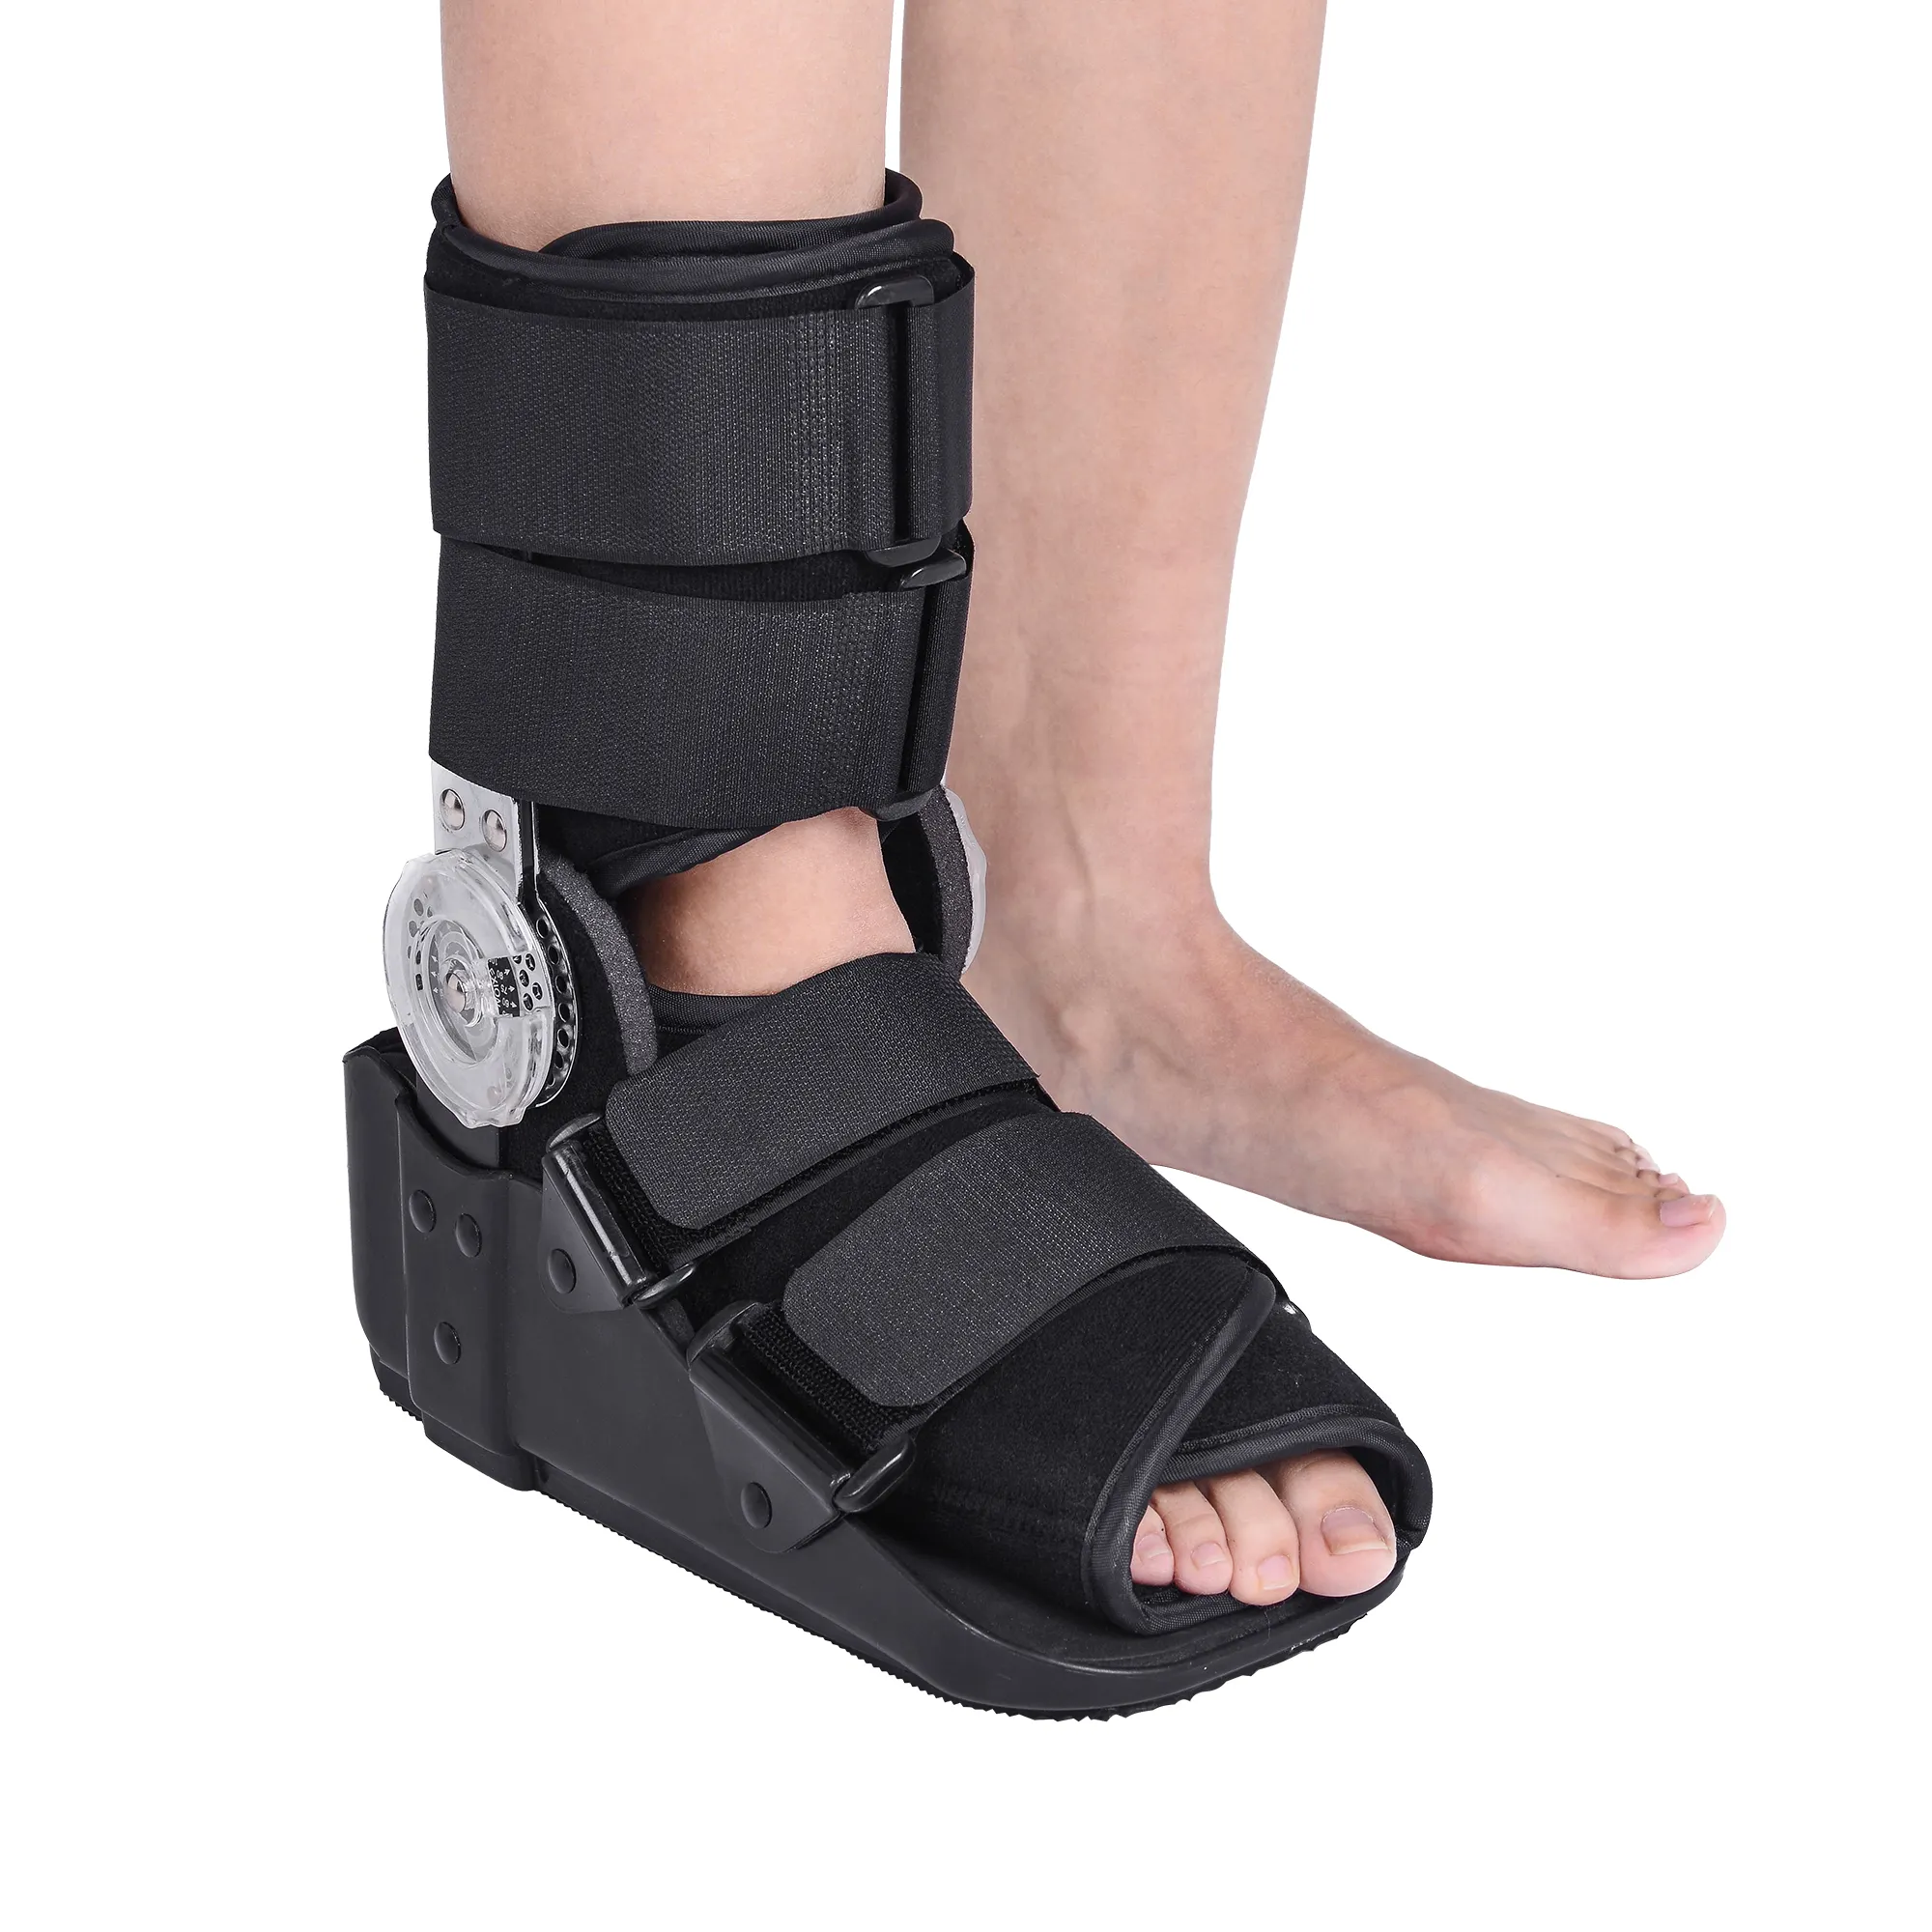 Chỉnh hình y tế đi bộ cam Boot chân mắt cá chân hỗ trợ Brace gãy xương Rom Walker Boot cho sức khỏe